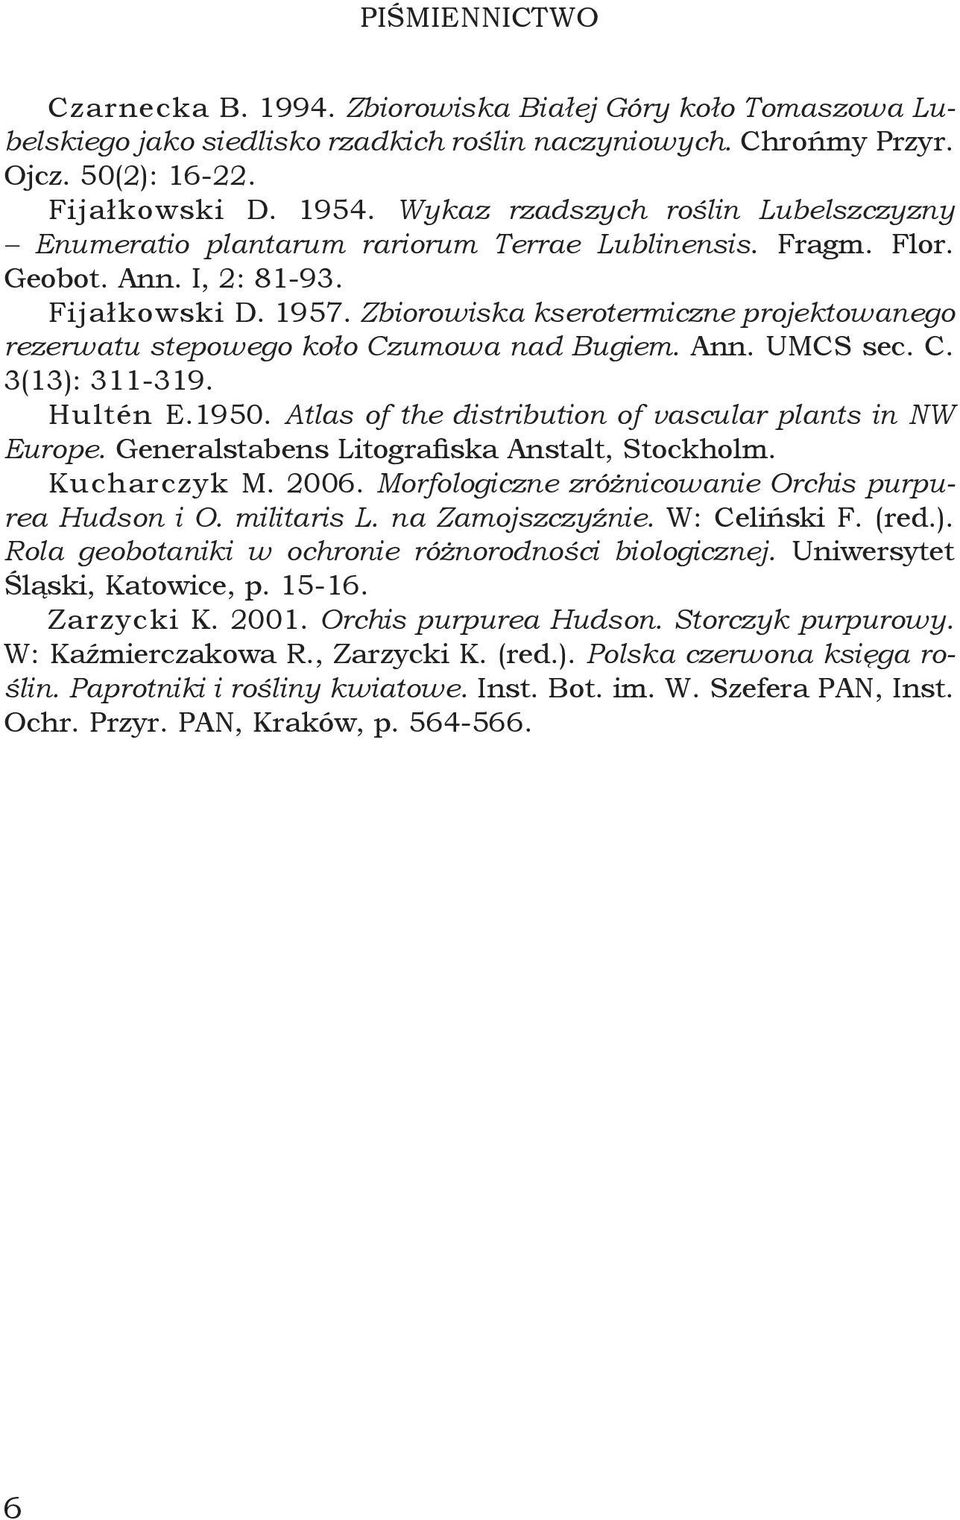 Zbiorowiska kserotermiczne projektowanego rezerwatu stepowego koło Czumowa nad Bugiem. Ann. UMCS sec. C. 3(13): 311-319. Hultén E.1950. Atlas of the distribution of vascular plants in NW Europe.